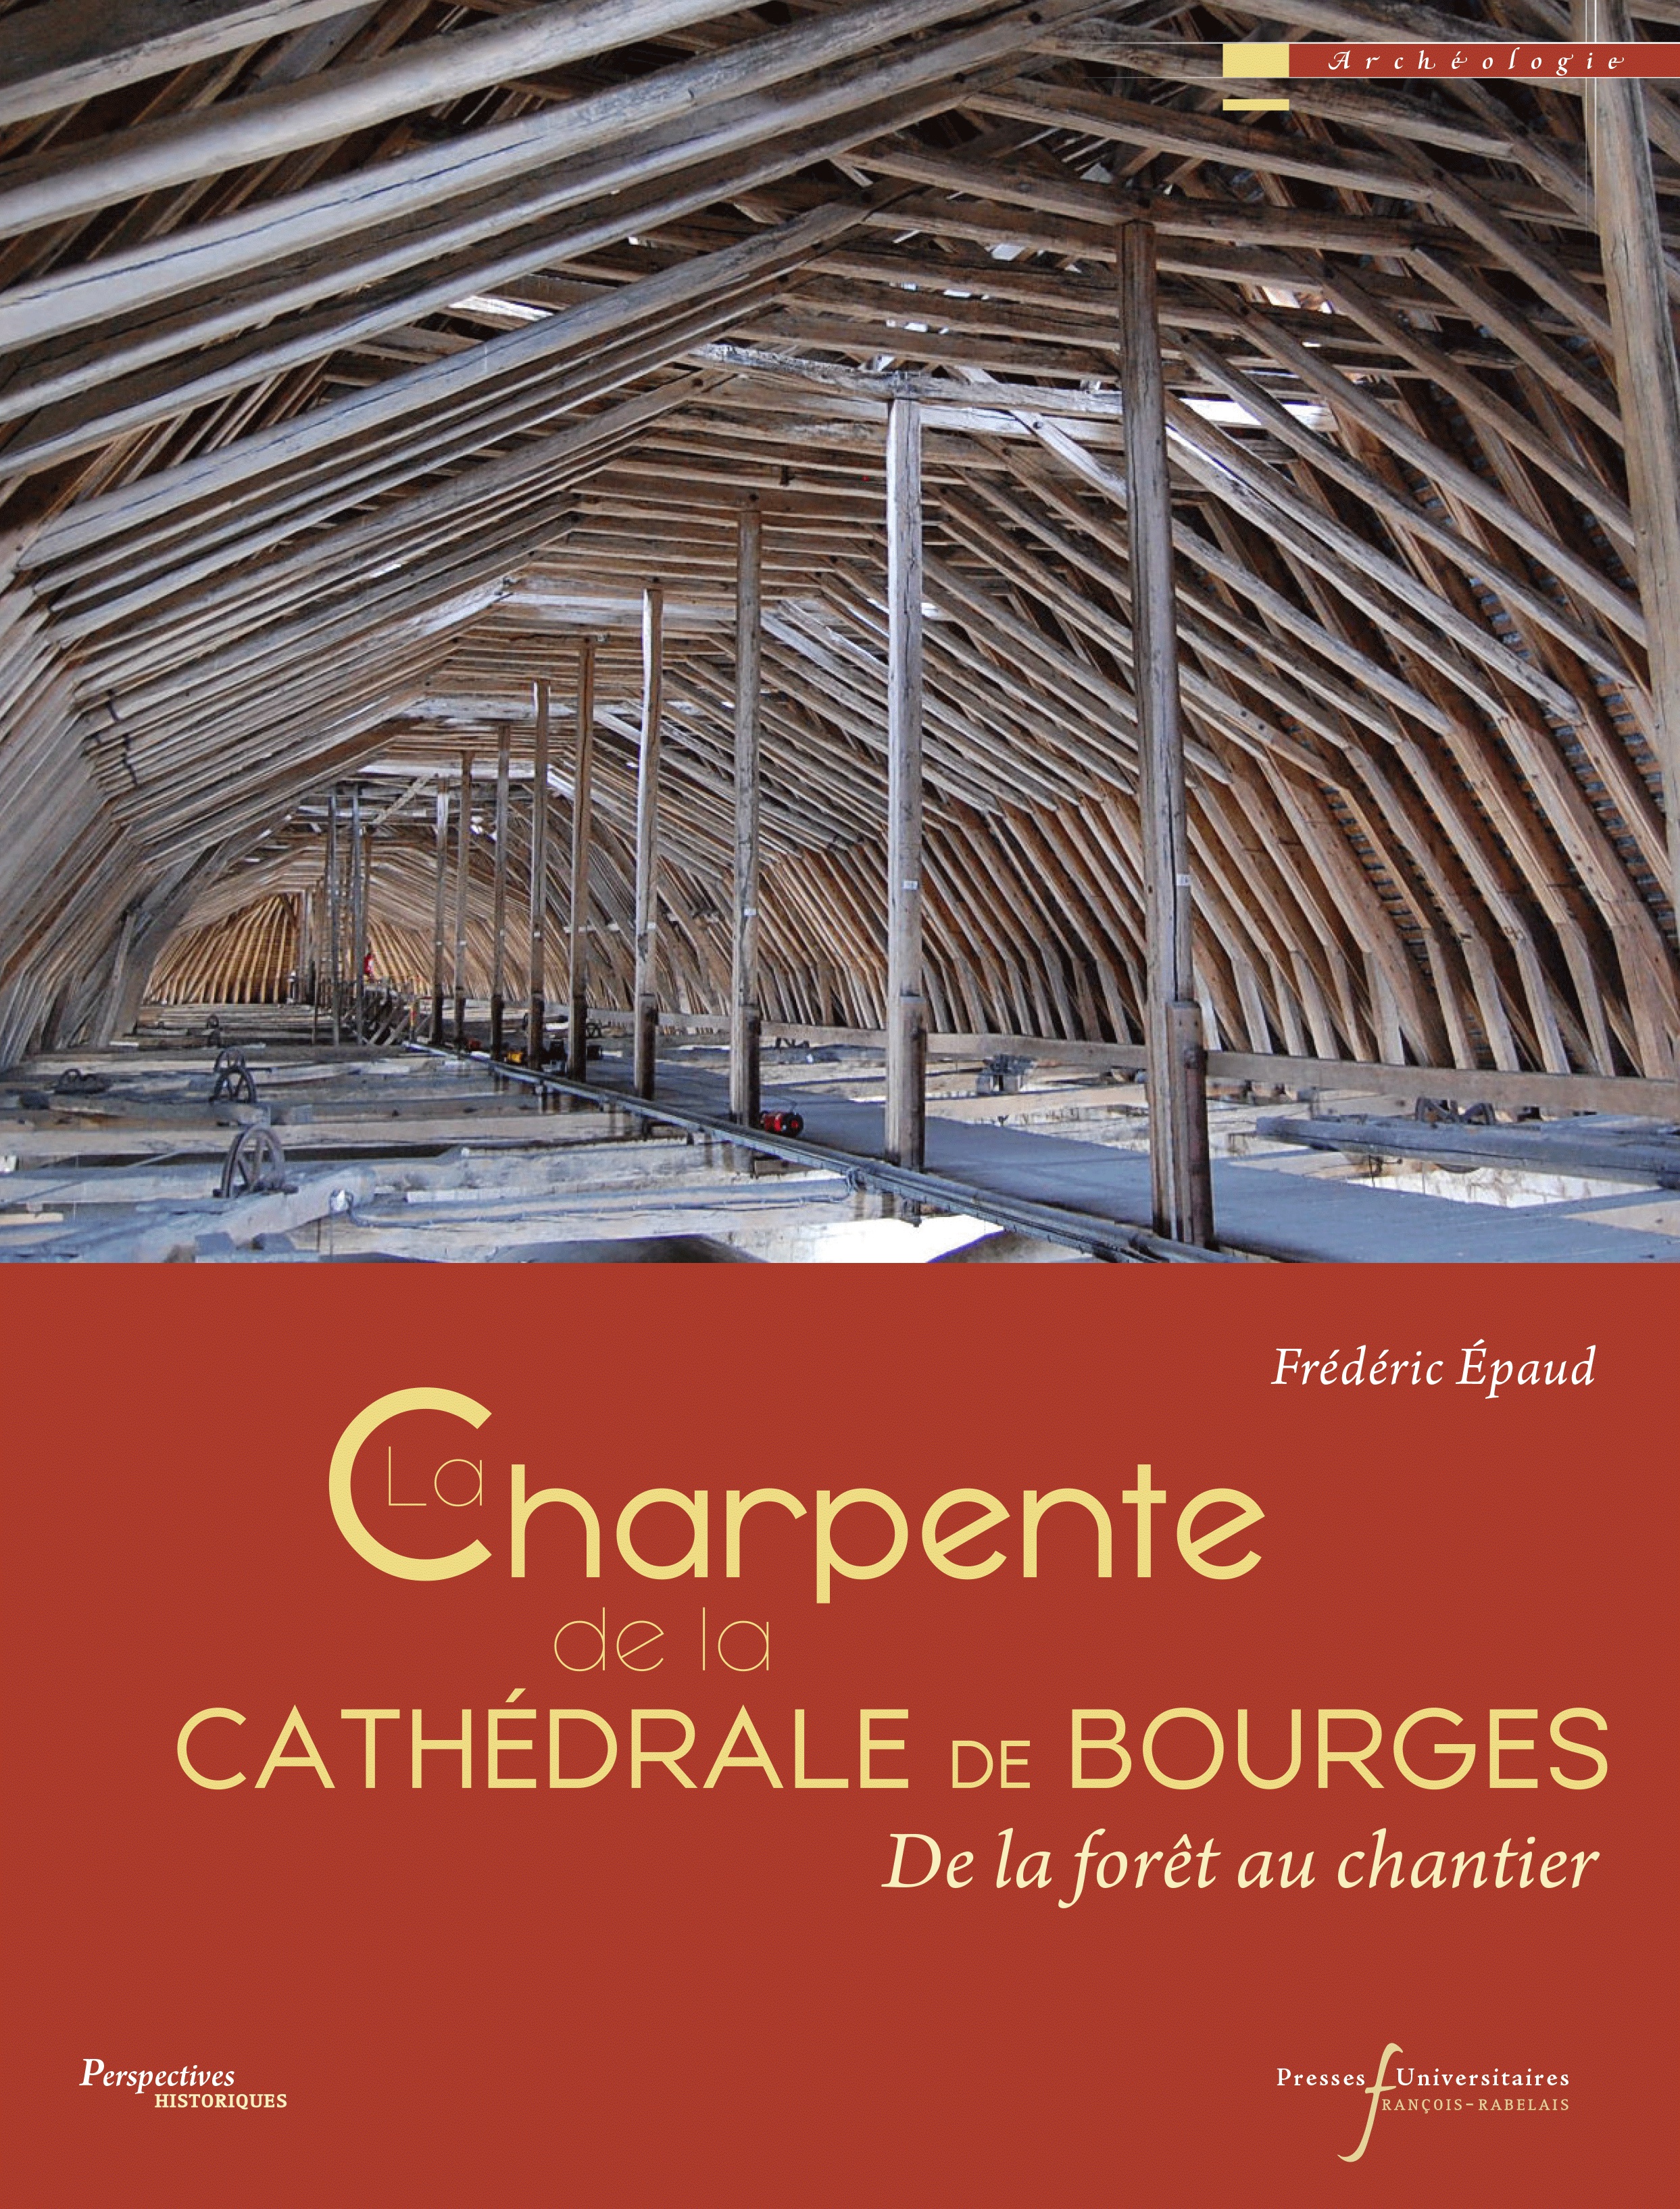 La charpente de la cathédrale de Bourges. De la forêt au chantier, 2017, 208 p.